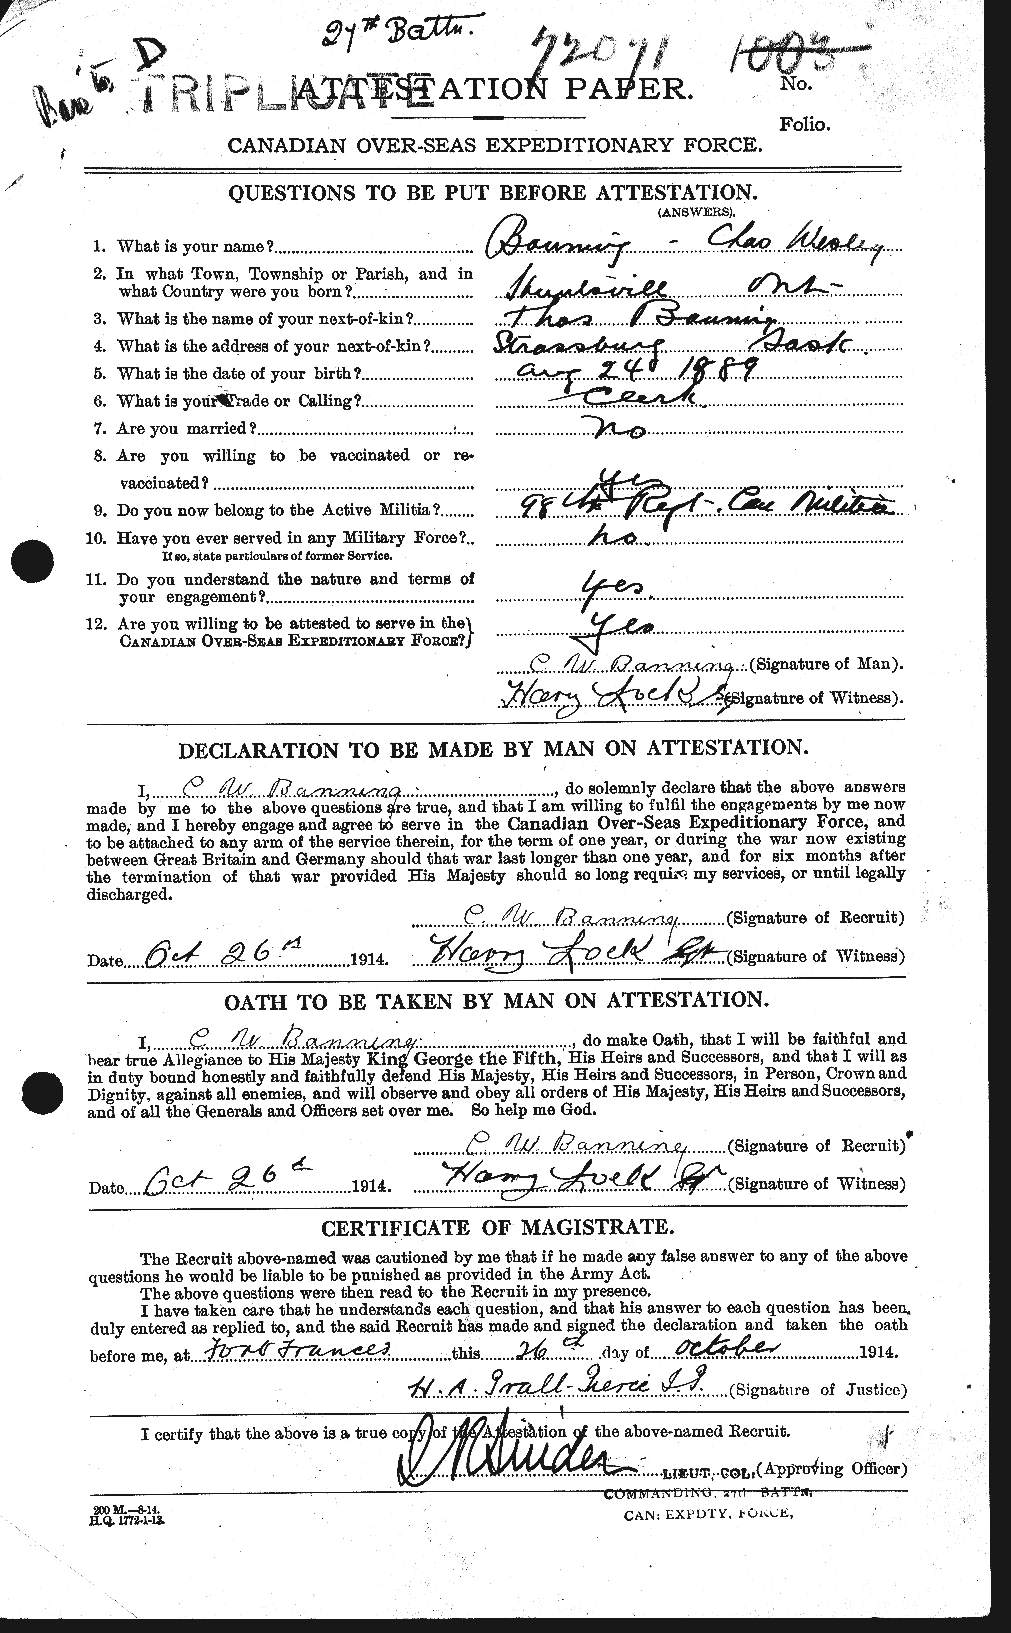 Dossiers du Personnel de la Première Guerre mondiale - CEC 224832a